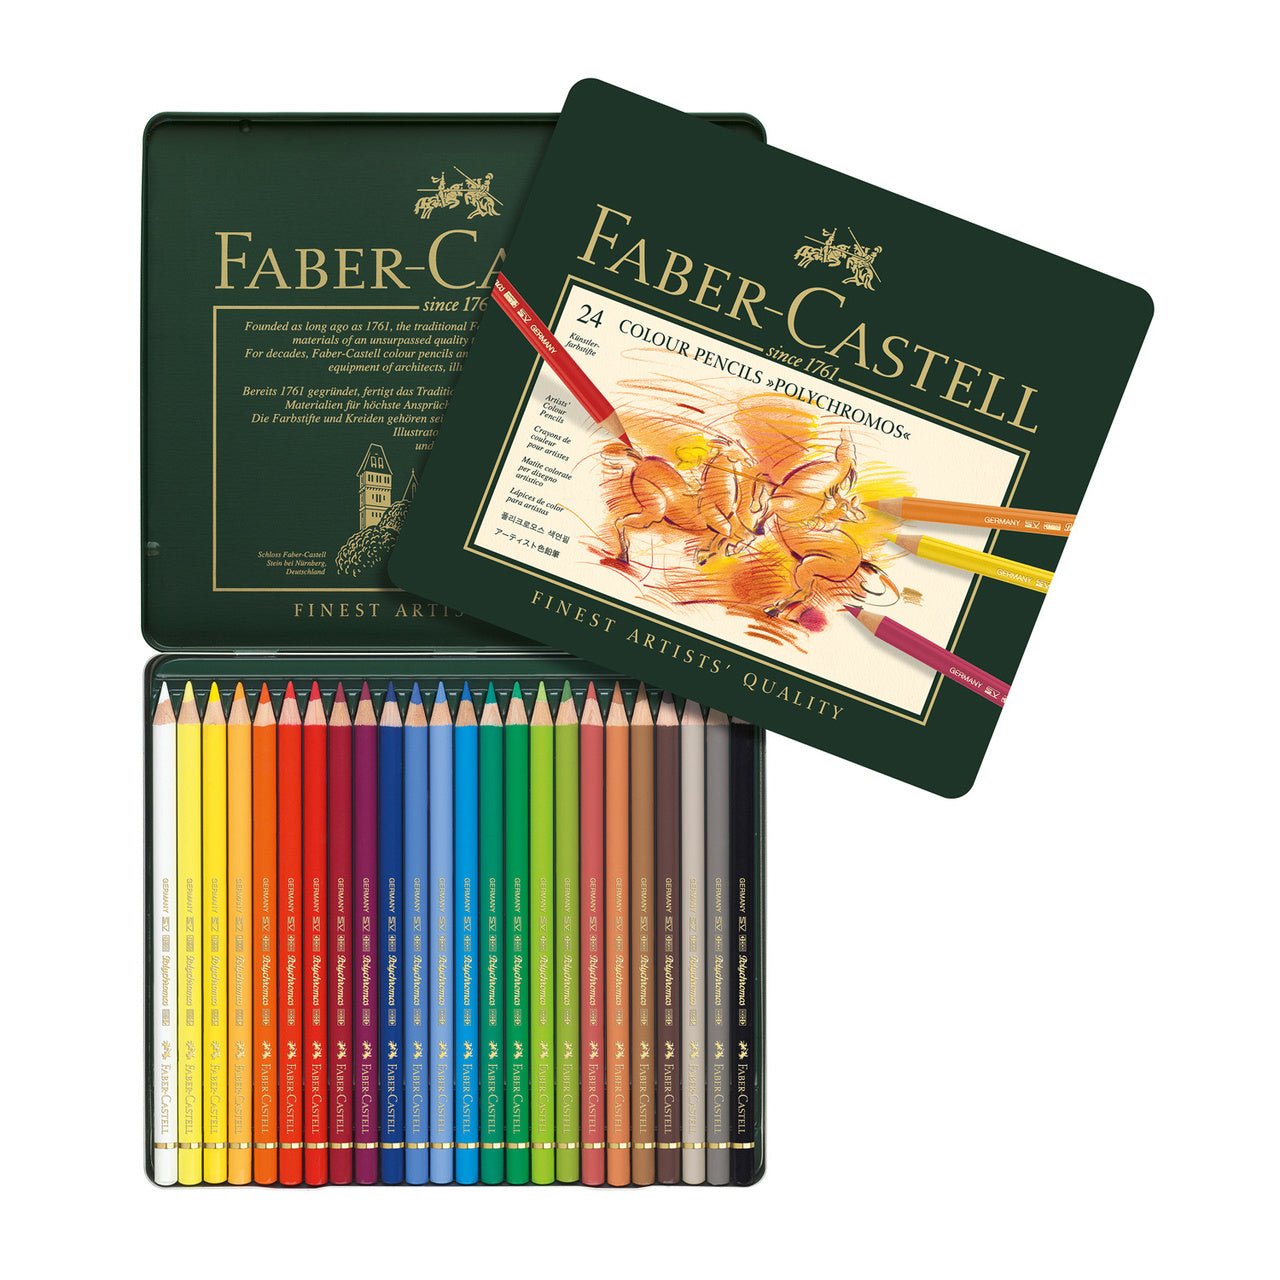 Faber-Castell Polychromos Artist Colored Pencil Set of 24 - merriartist.com